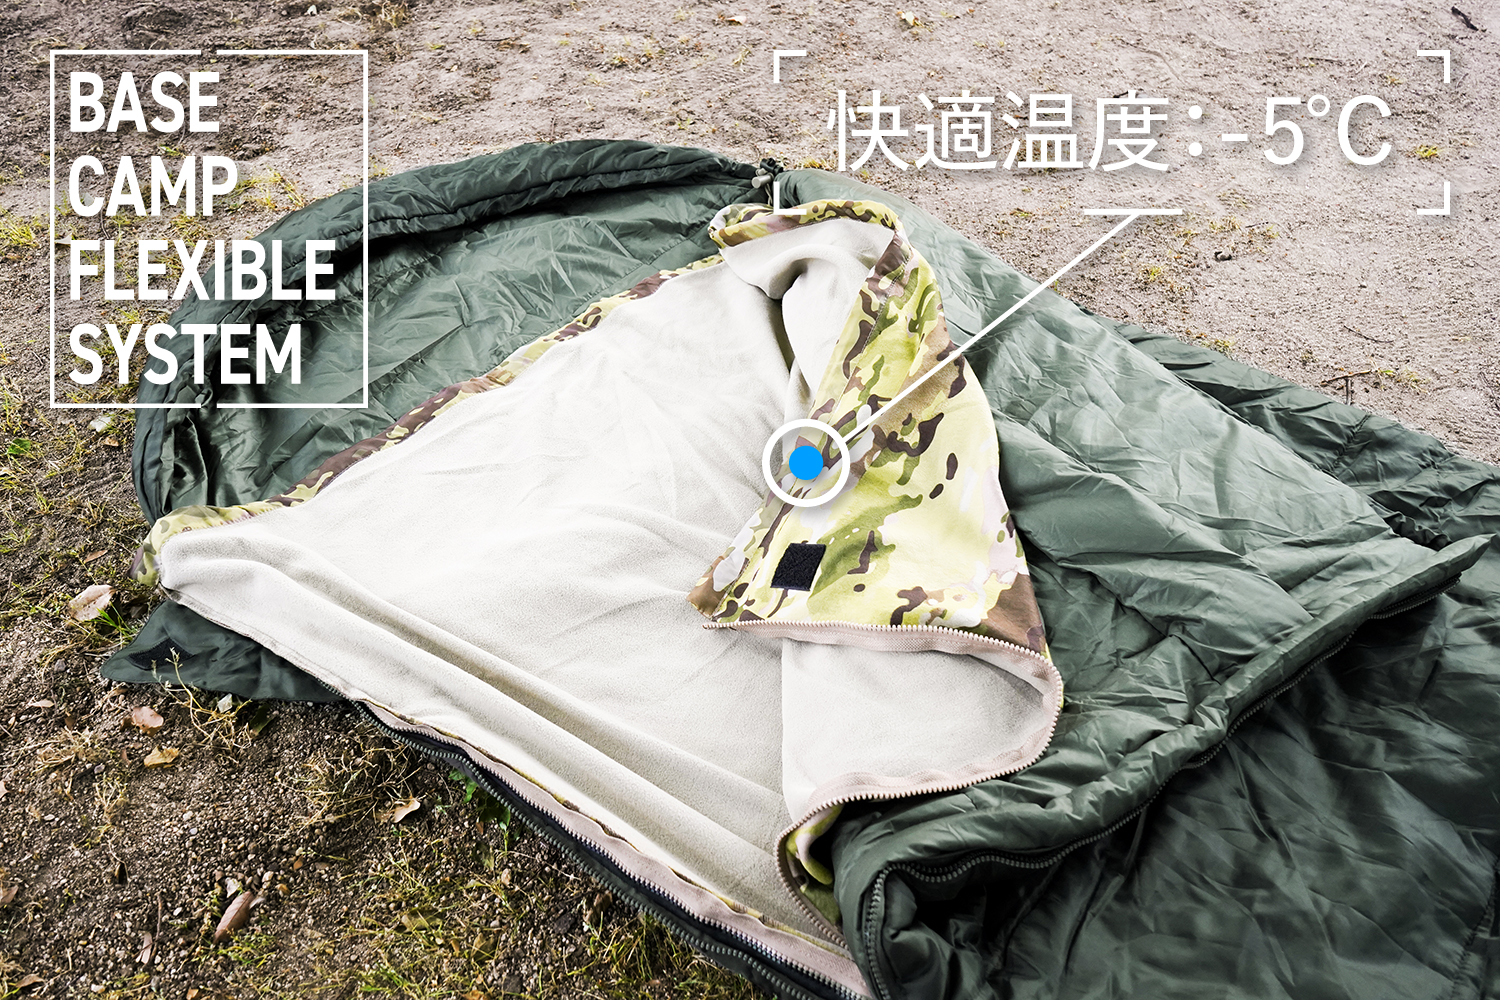 スナグパック シュラフ 寝袋 ベースキャンプ フレキシブルシステム